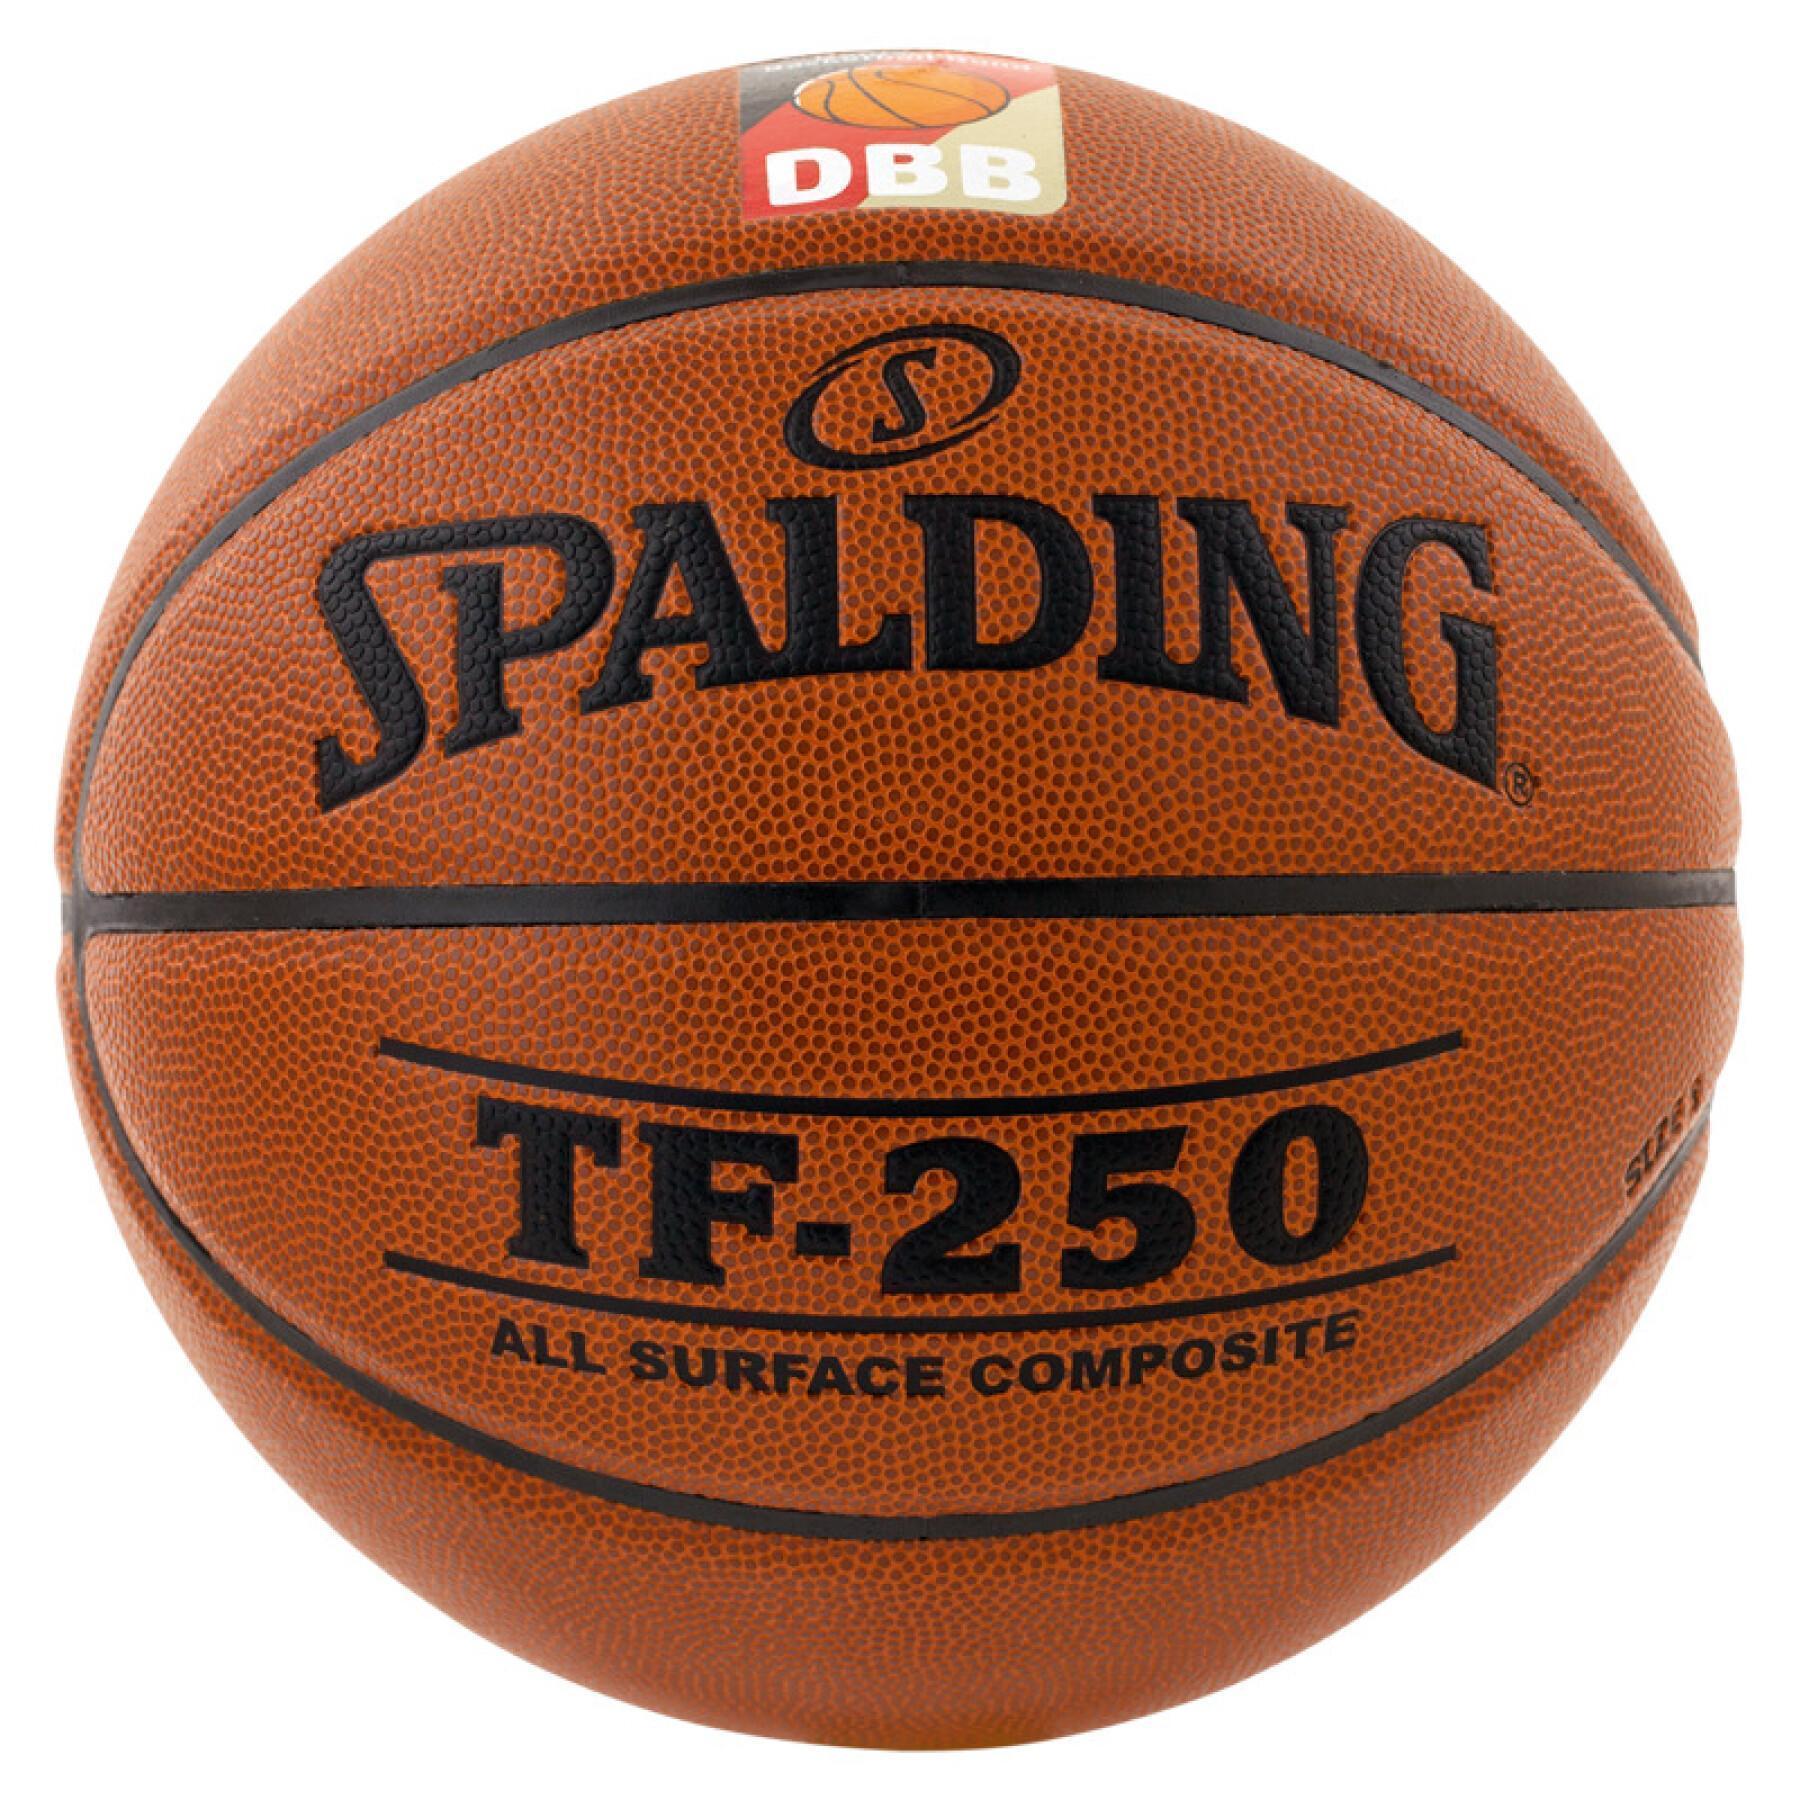 Balloon Spalding DBB Tf250 (74-592z)